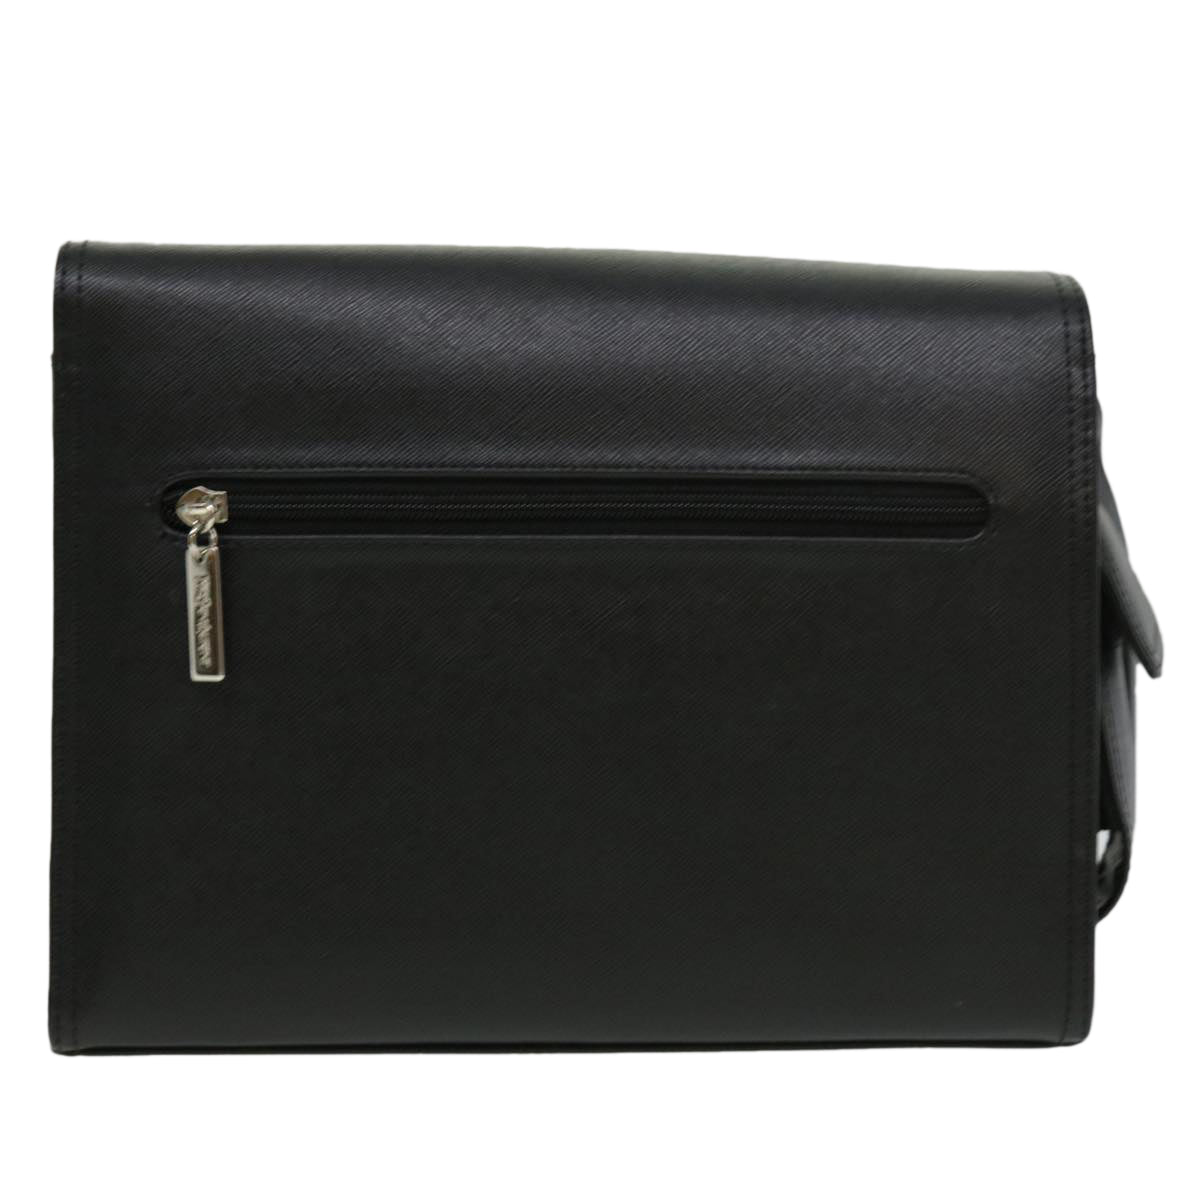 SAINT LAURENT Clutch Bag Leather Black Auth 32493 - 0